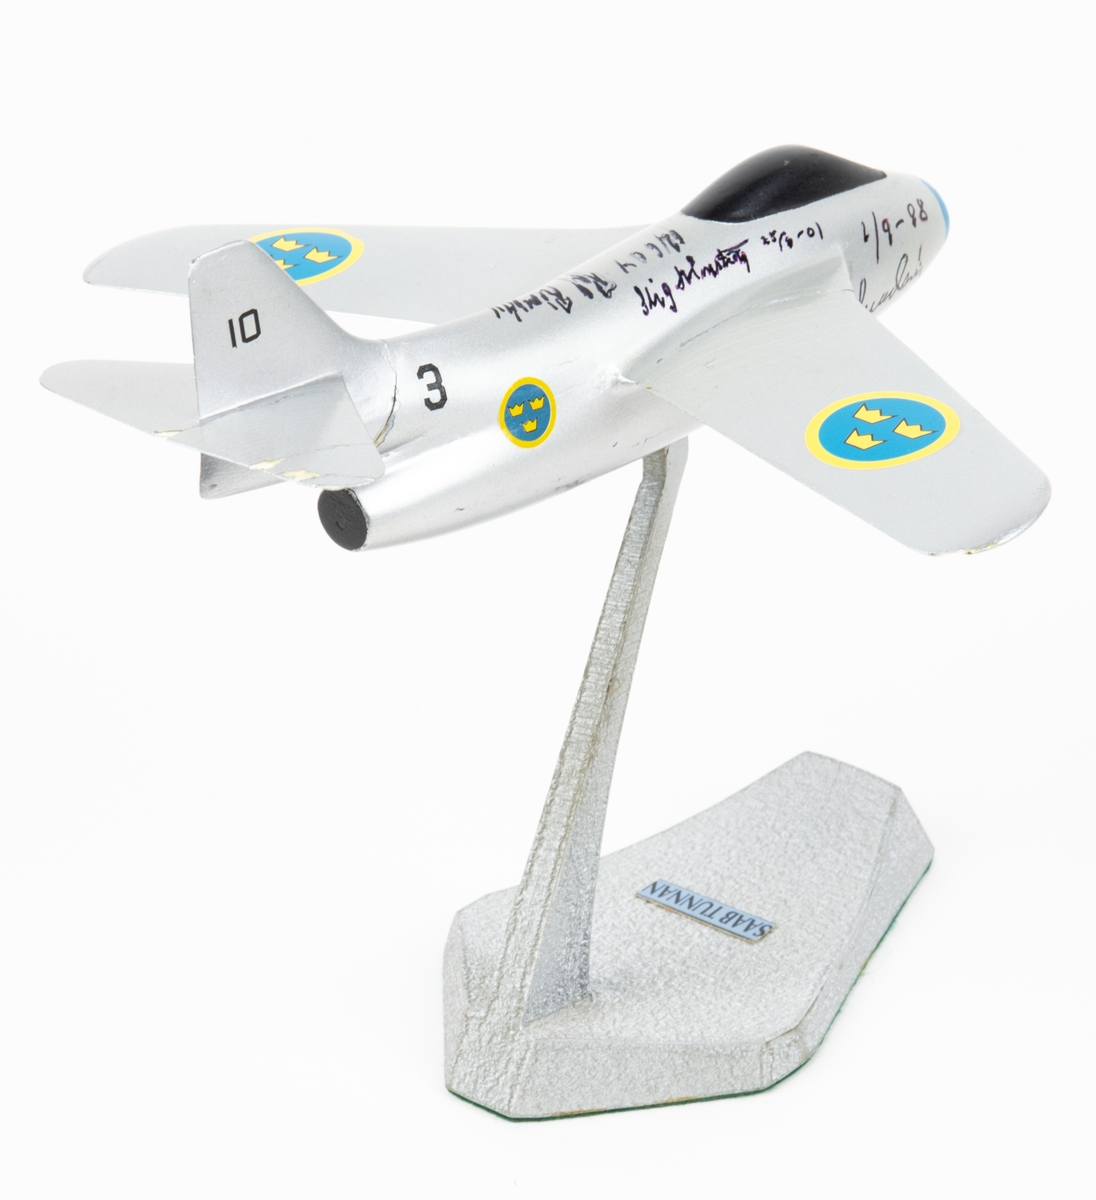 Flygplansmodell Tunnan med fot. På flygplanskroppen finns namnteckningar och årtal.